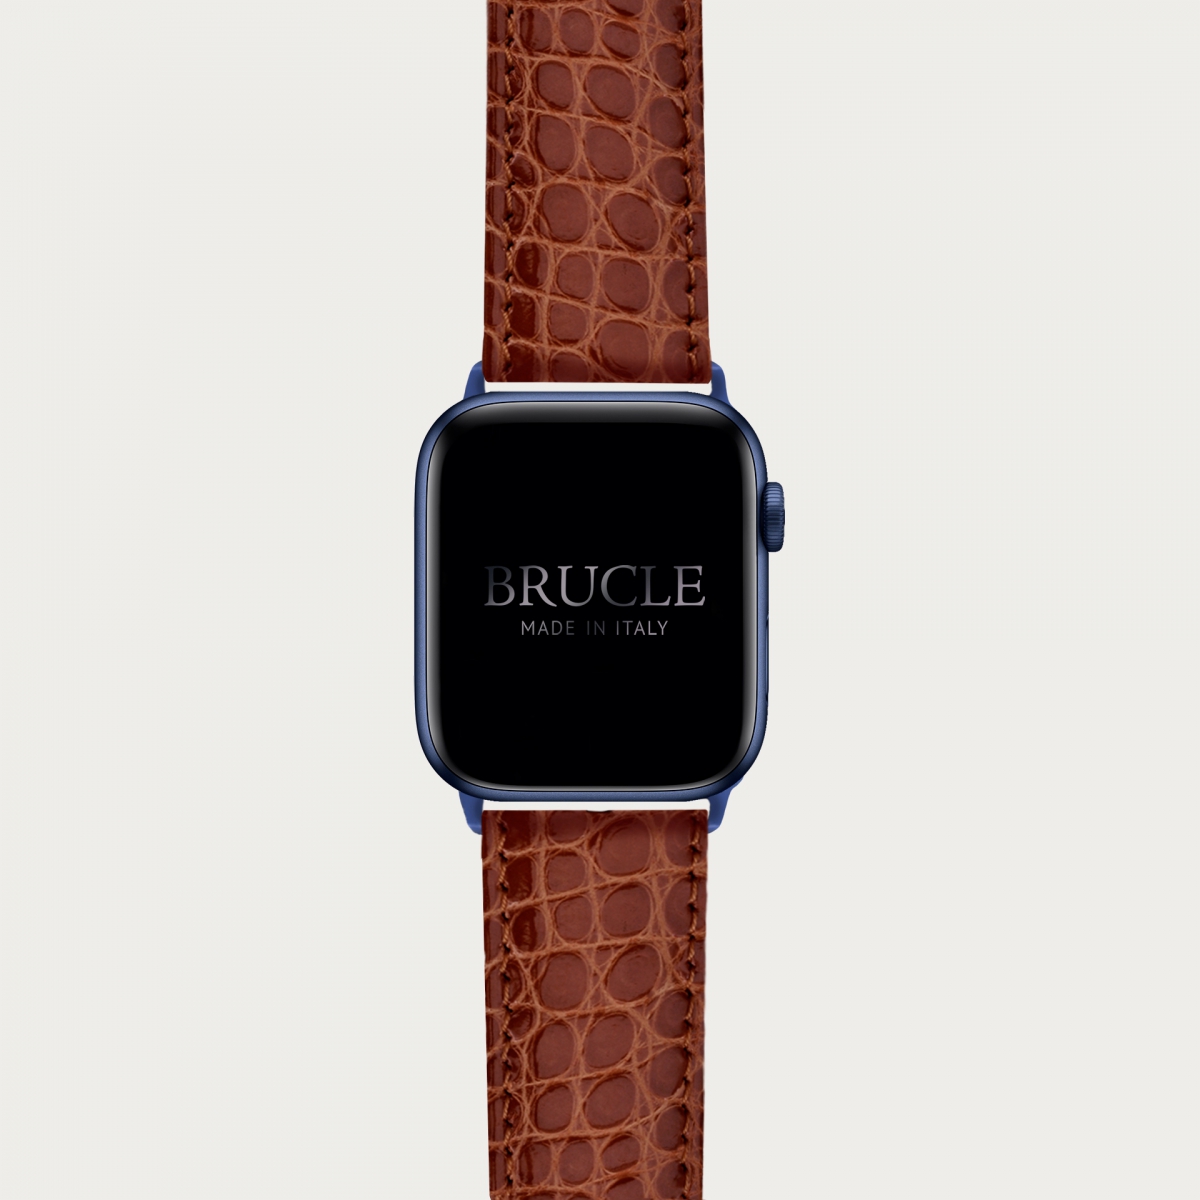 Correa de reloj en genuino caimán compatible con Apple Watch / Samsung smartwatch, oro marrón